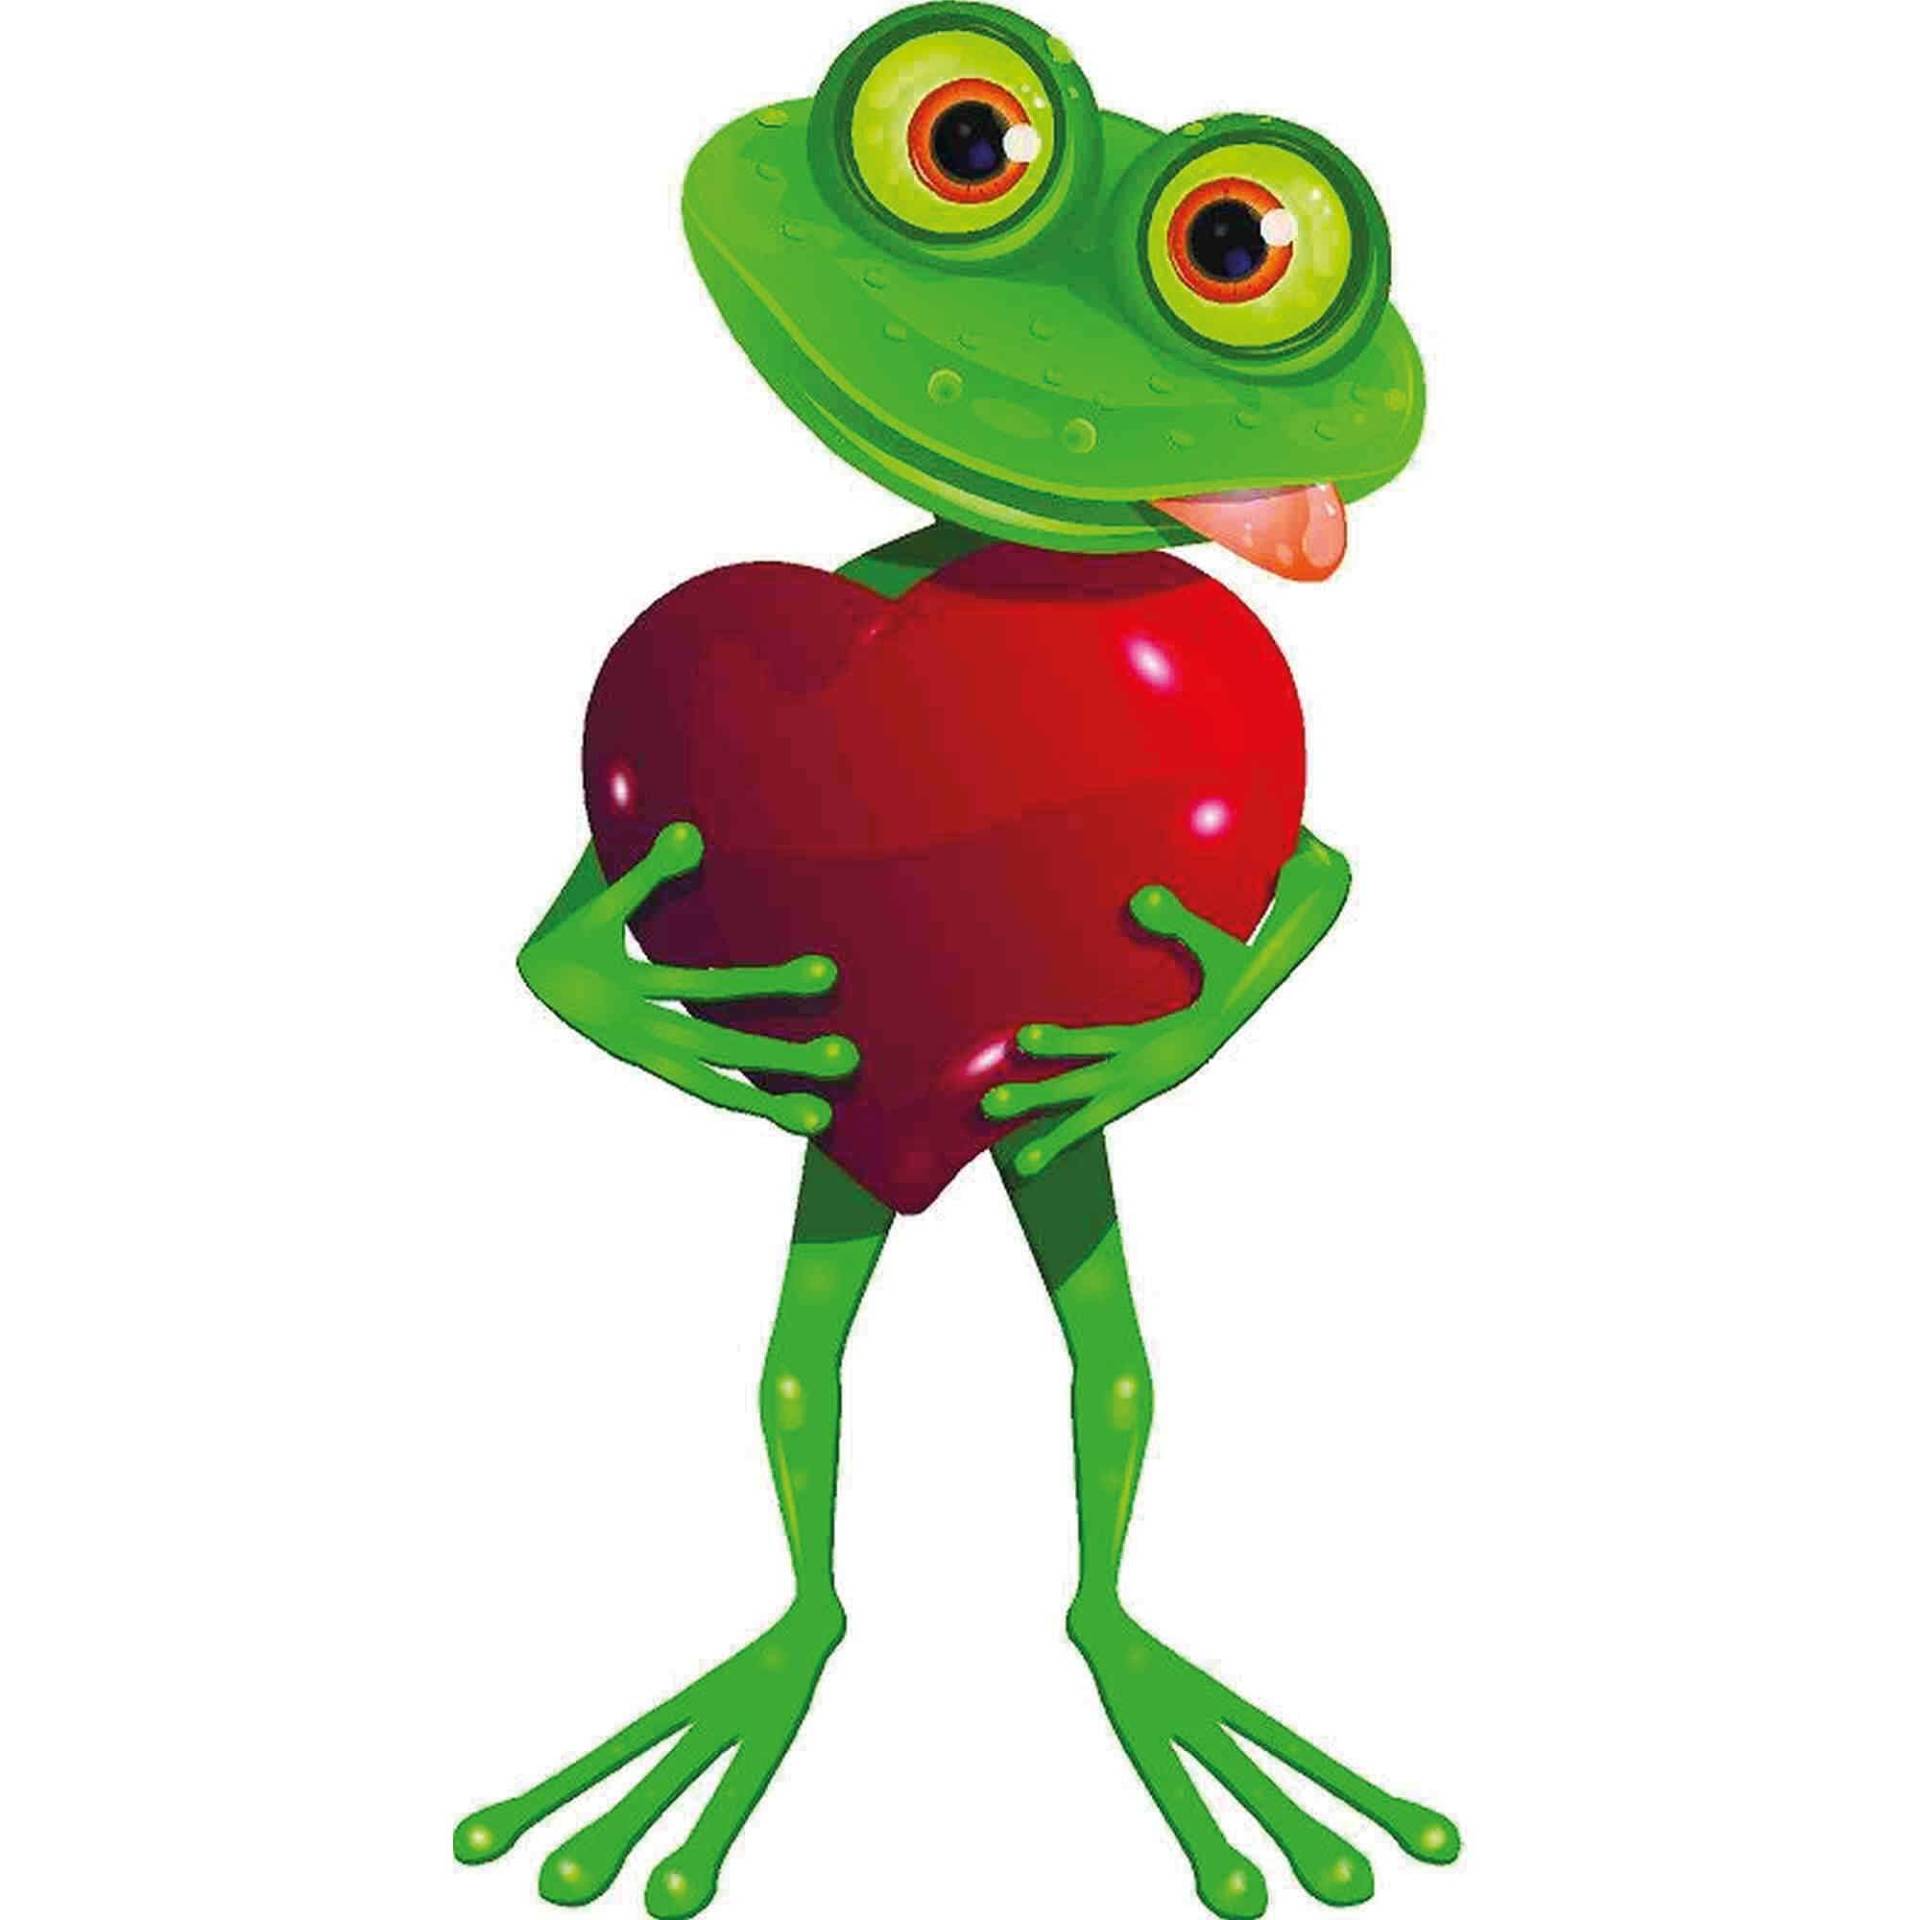 kleberio Aufkleber Sticker Frosch mit Herz selbstklebend Autoaufkleber Sticker für Kinder Bild Dekoration Set Car Wohnwagen wetterfest 10 x 19 cm von kleberio